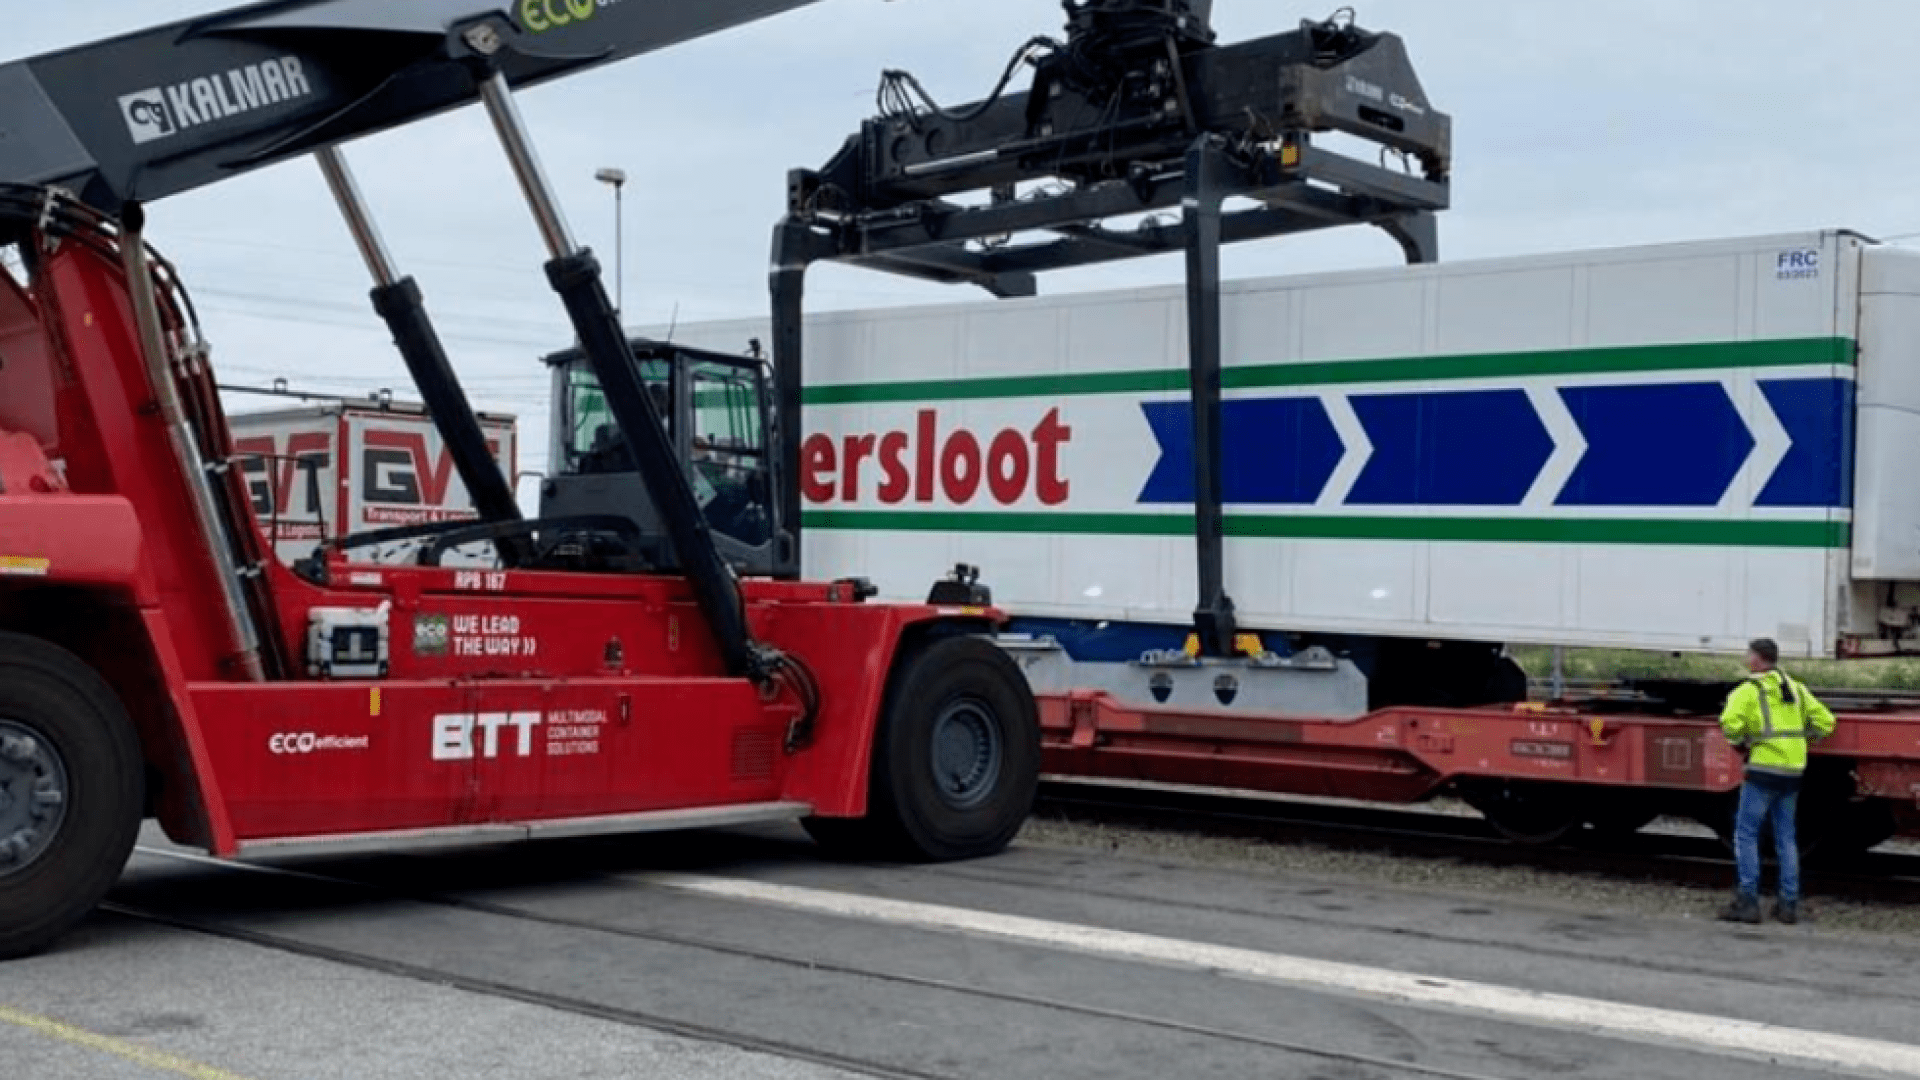 Testrit Tilburg-Polen: spoor zeer geschikt voor vervoer planten